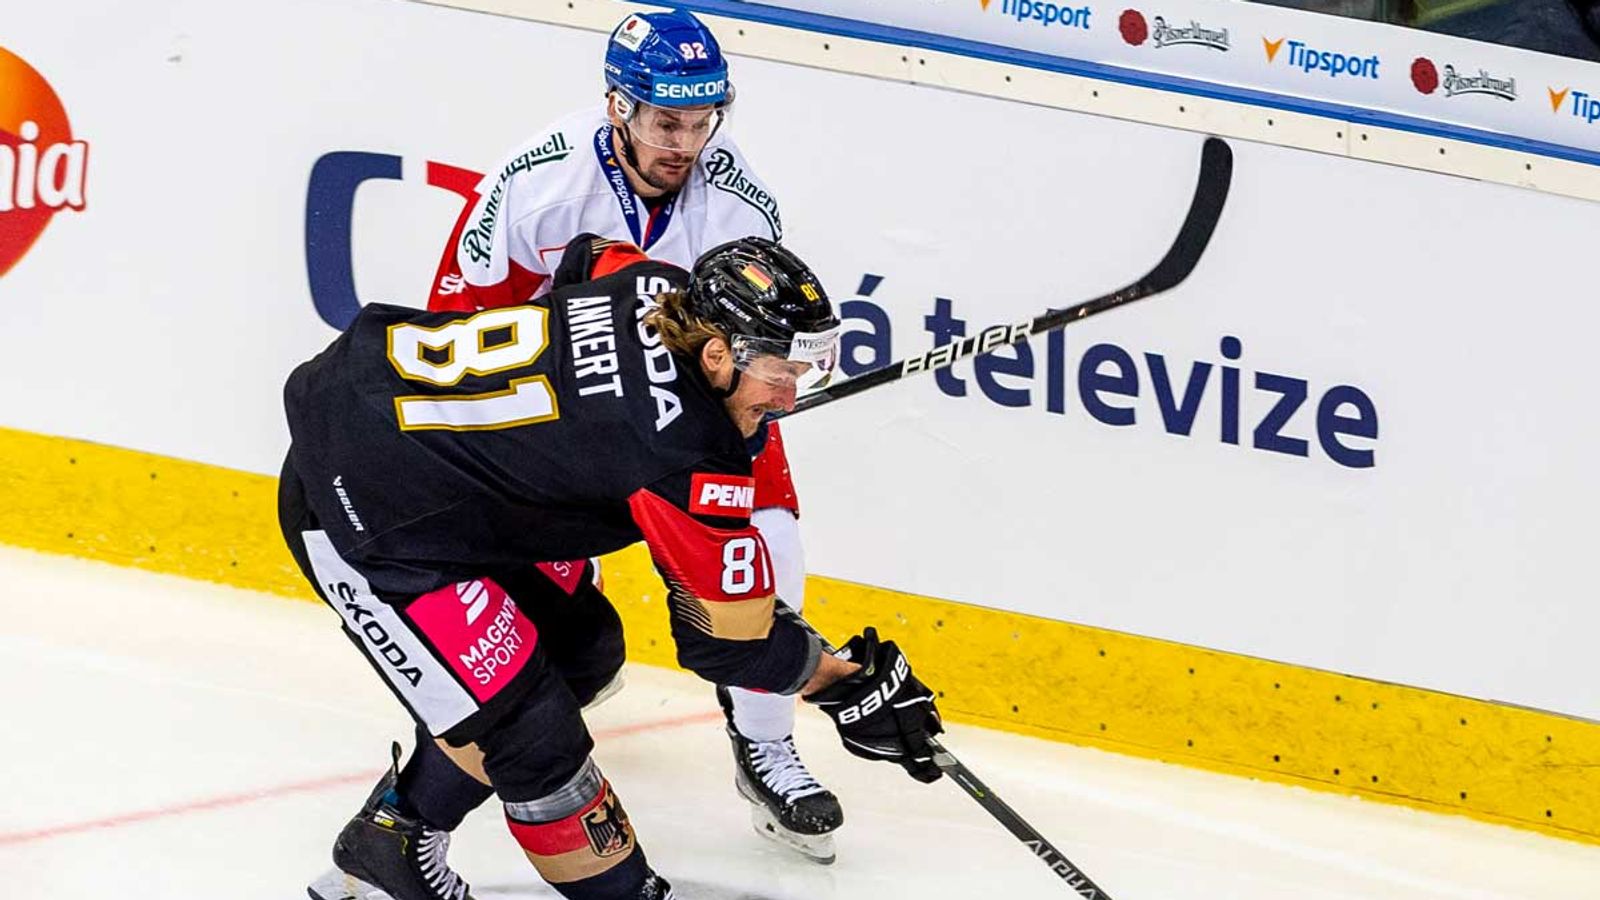 Zprávy z ledního hokeje: Německo vyhrálo druhý test mistrovství světa proti České republice |  Novinky z ledního hokeje